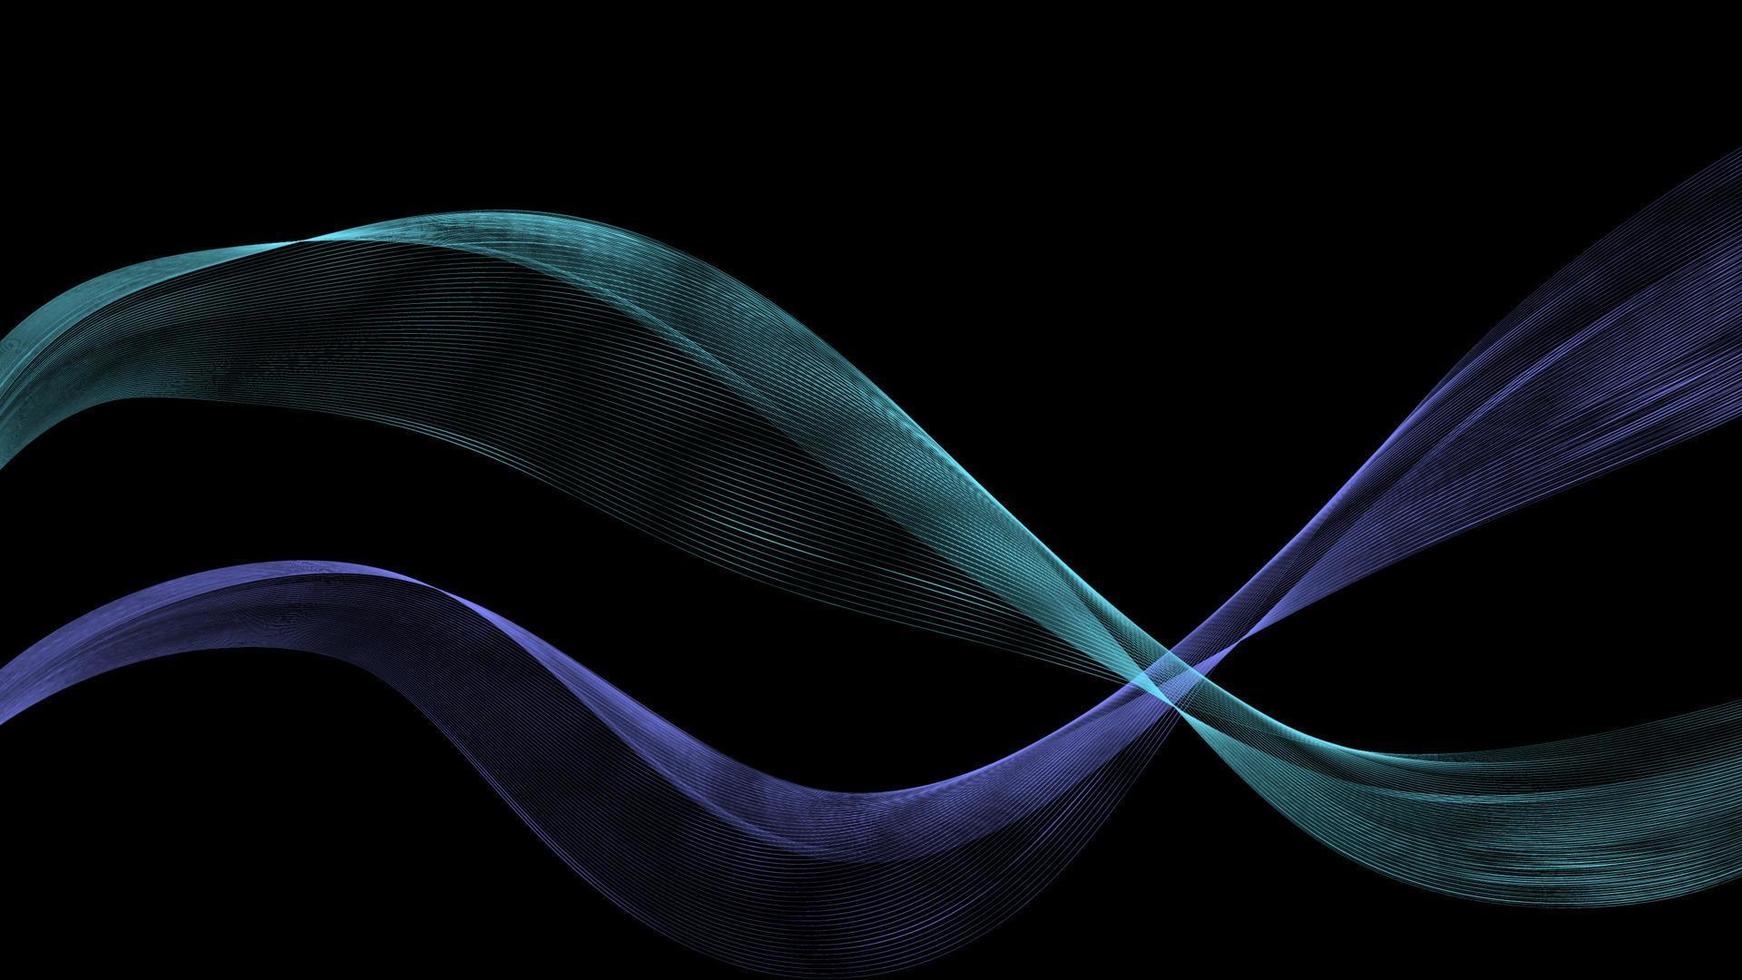 abstrakte blaue schöne digitale moderne magische glänzende elektrische Energielaser-Neonbeschaffenheit mit Linien und Wellenstreifen, Hintergrund vektor